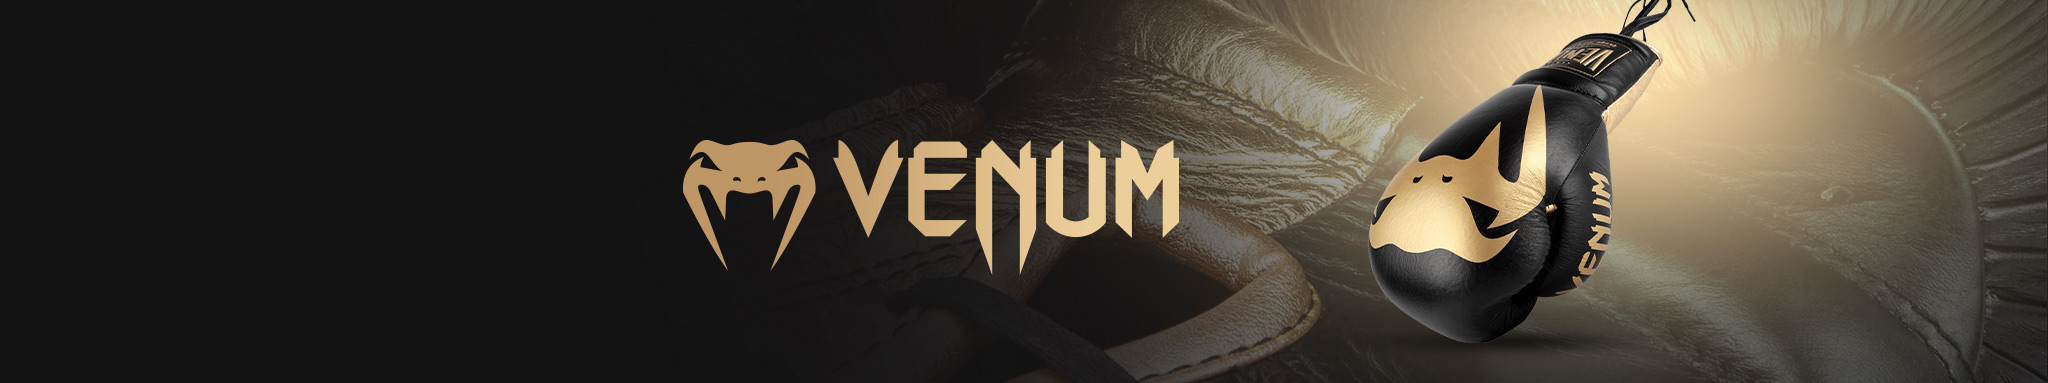 Venum : vêtements, équipements & accessoires de la marque Venum | Dragon Bleu